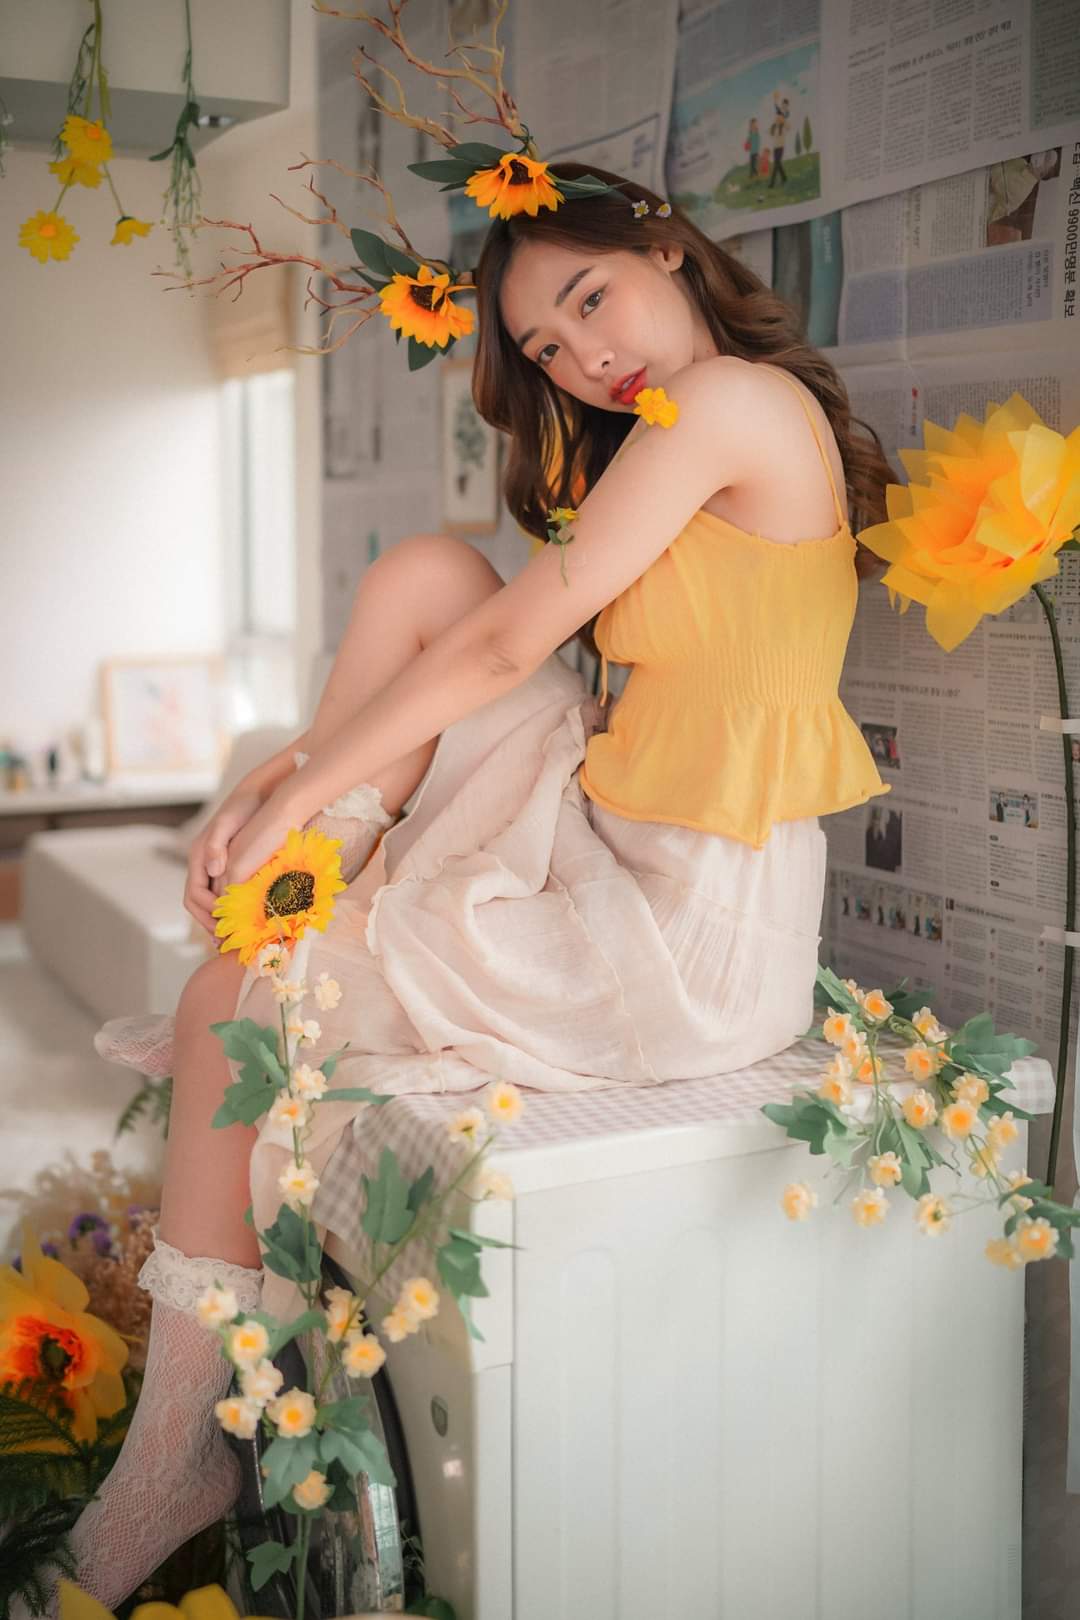 Thailand cute girl Gulisara Kasemsuk with Sun flowers. Thailand model Gulisara Kasemsuk hot cute photos and videos on 16pluslk.com. Sun flower girl. Thailand Babes xxx. Hot thai chicks nudes.